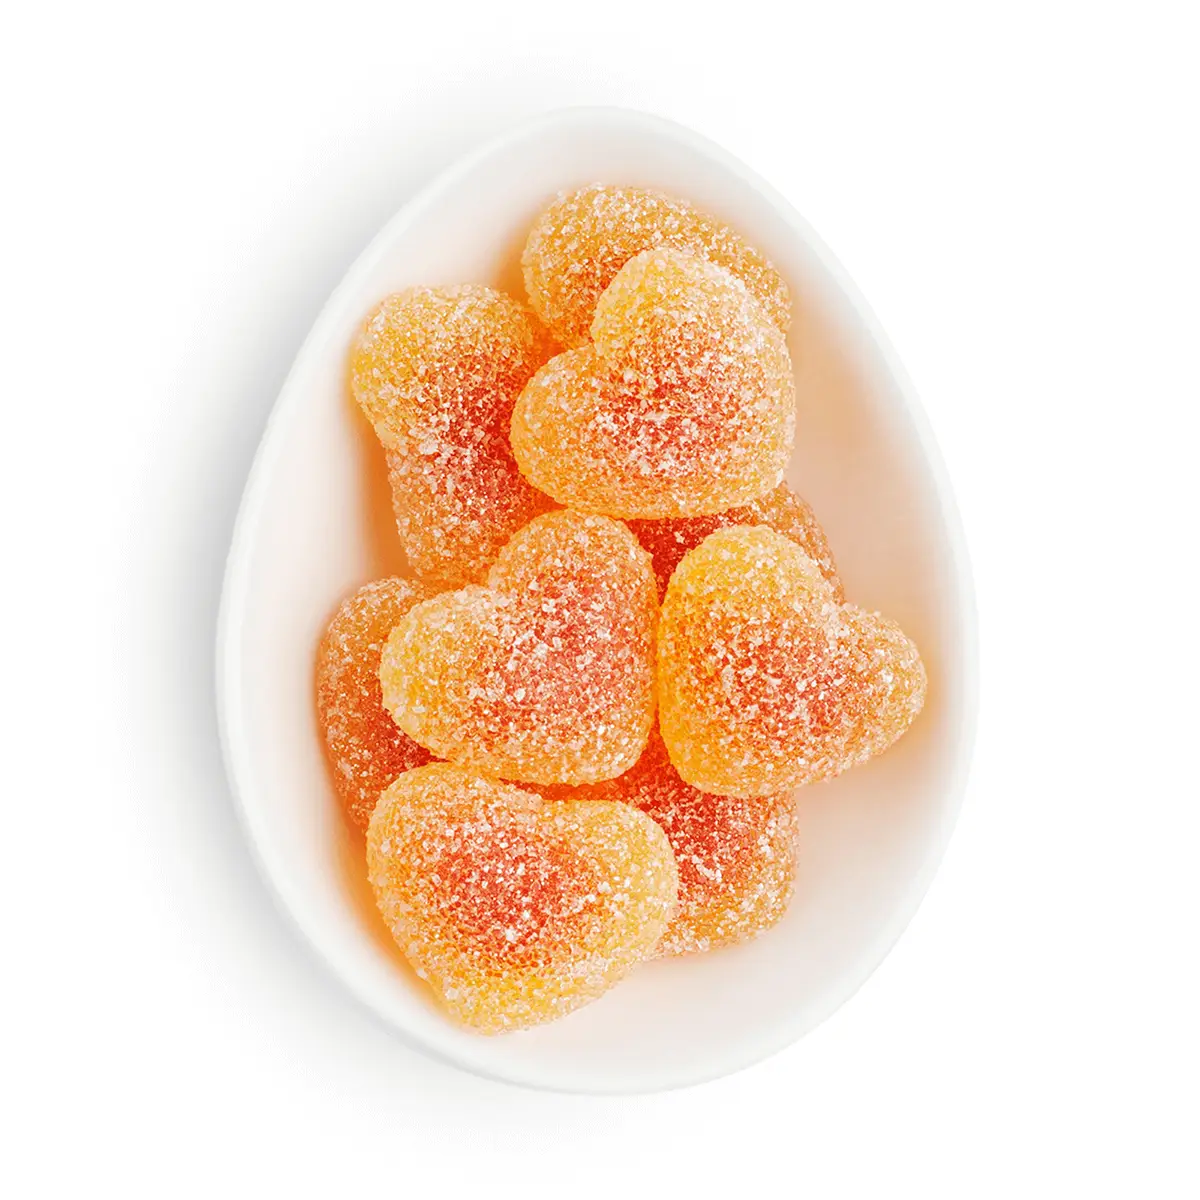 Sugarfina Peach Bellini